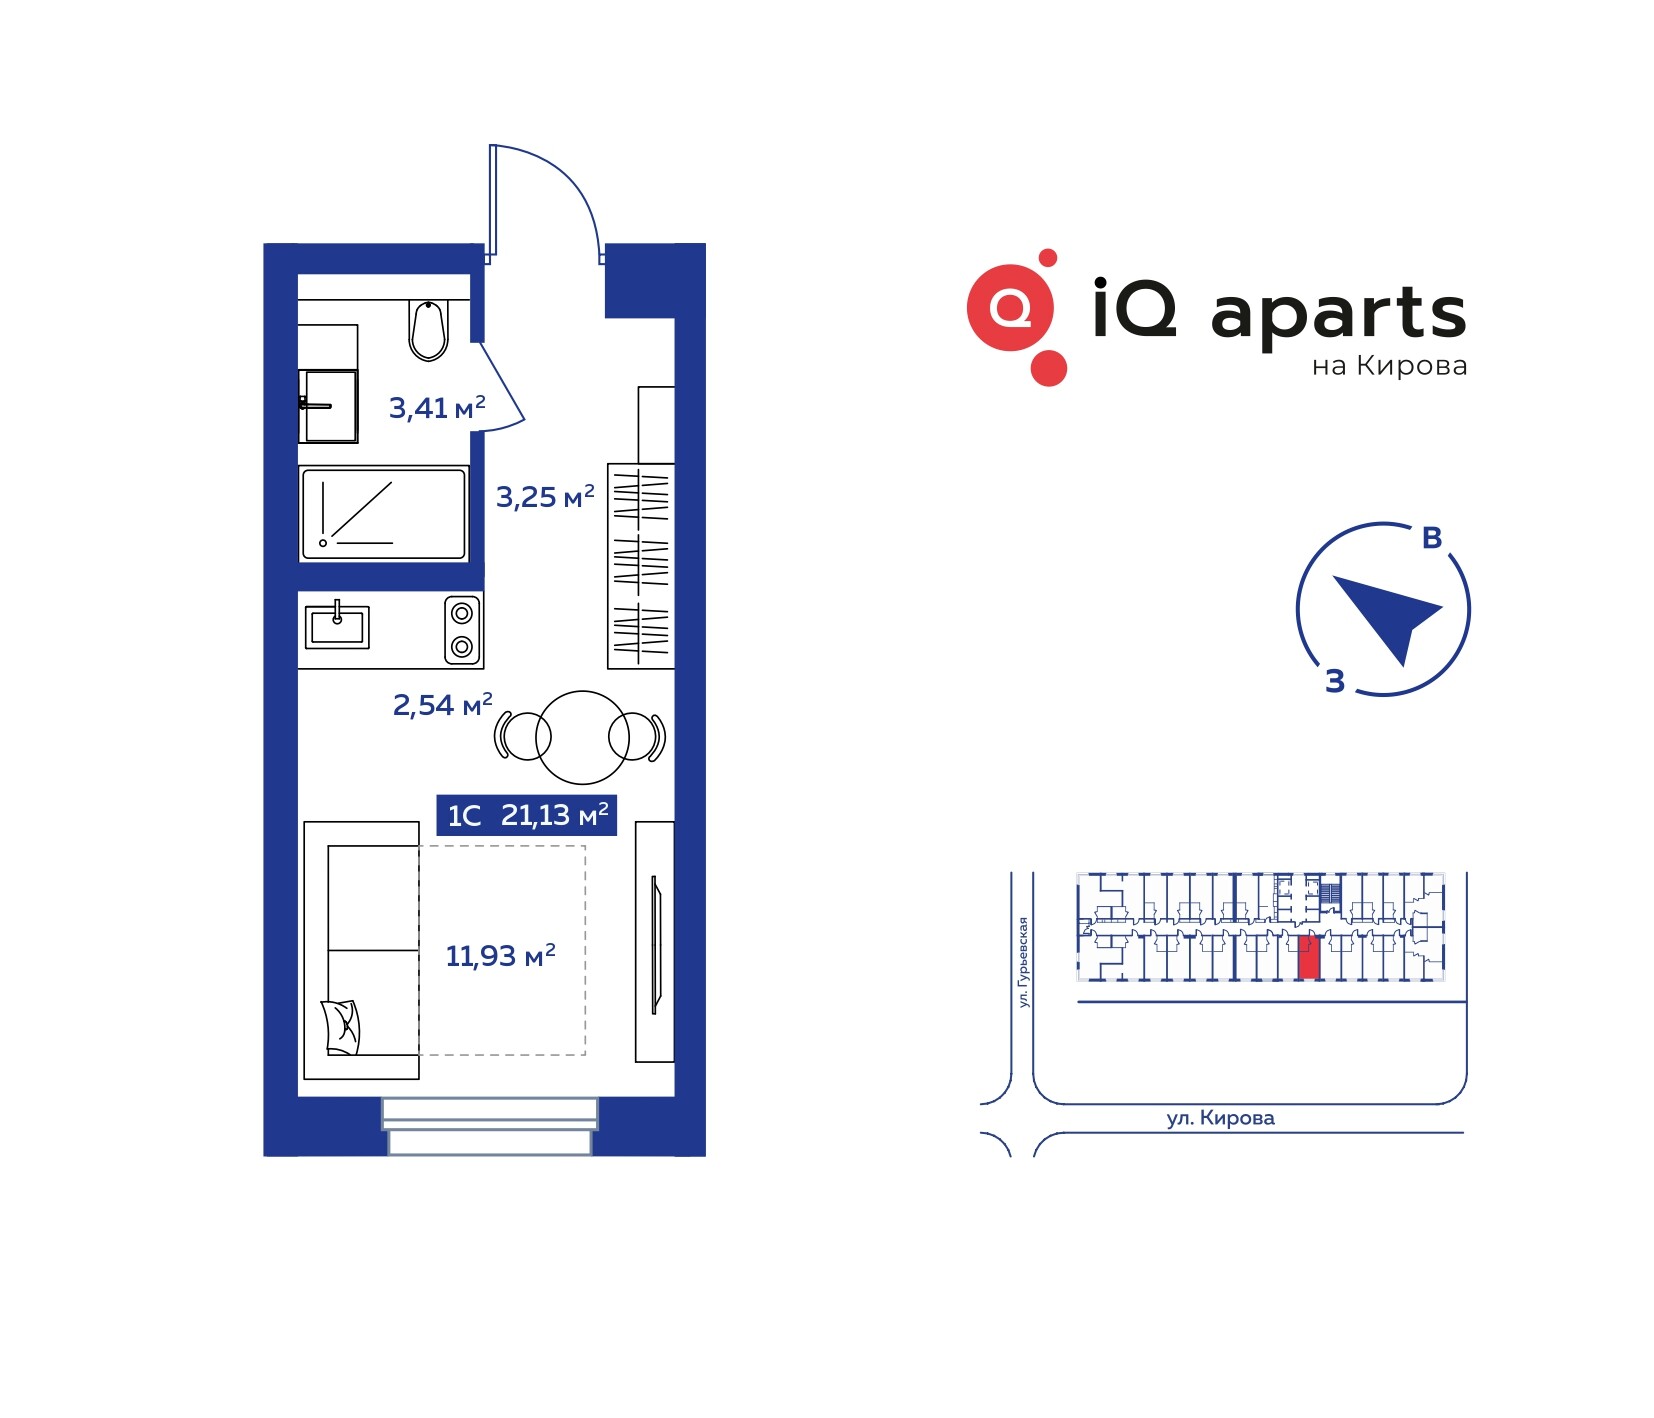 1-комнатная квартира 20.37м2 ЖК IQ Aparts